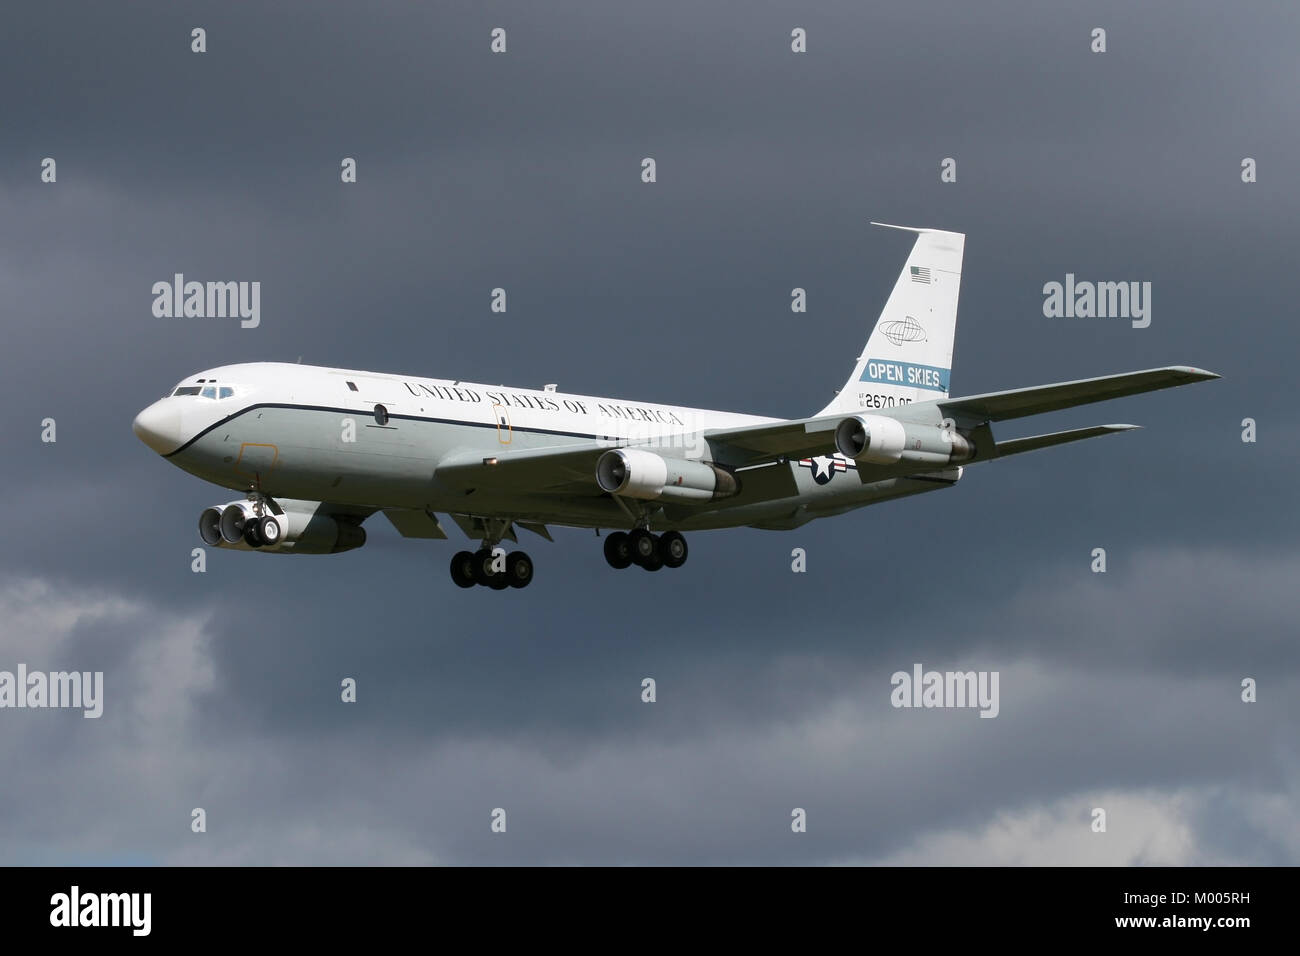 Sbarco nella storia del cielo, uno dei due convertiti OC-135's azionato dalla forza aerea degli Stati Uniti per i Cieli Aperti trattato arriva a Mildenhall. Foto Stock